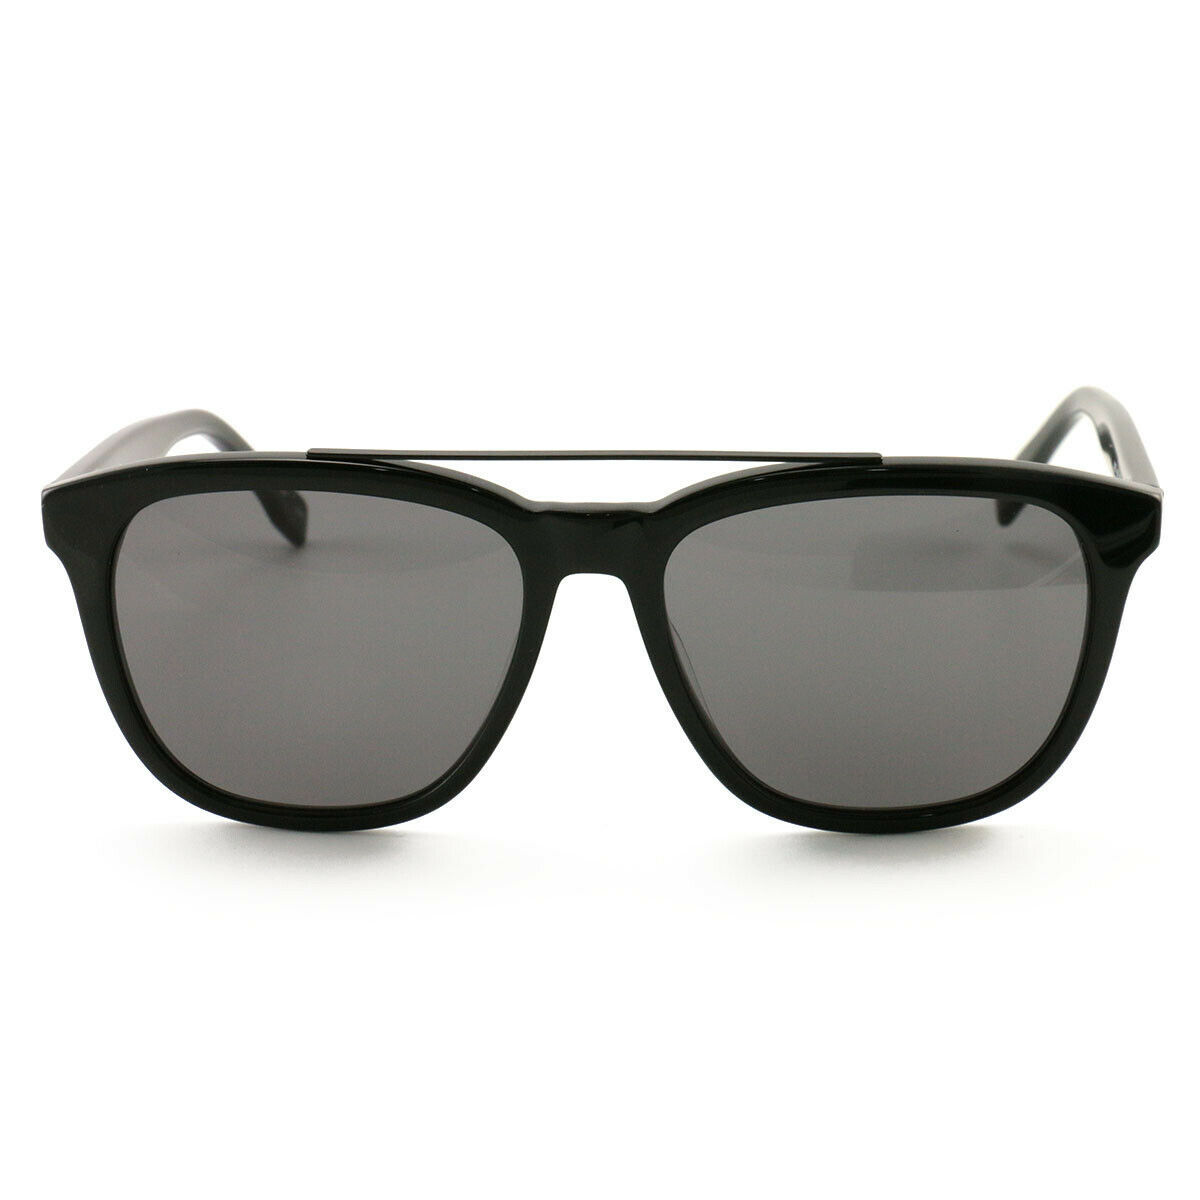 Lacoste Sunglasses L822S 001 Black 55 16 145 - Sunglasses